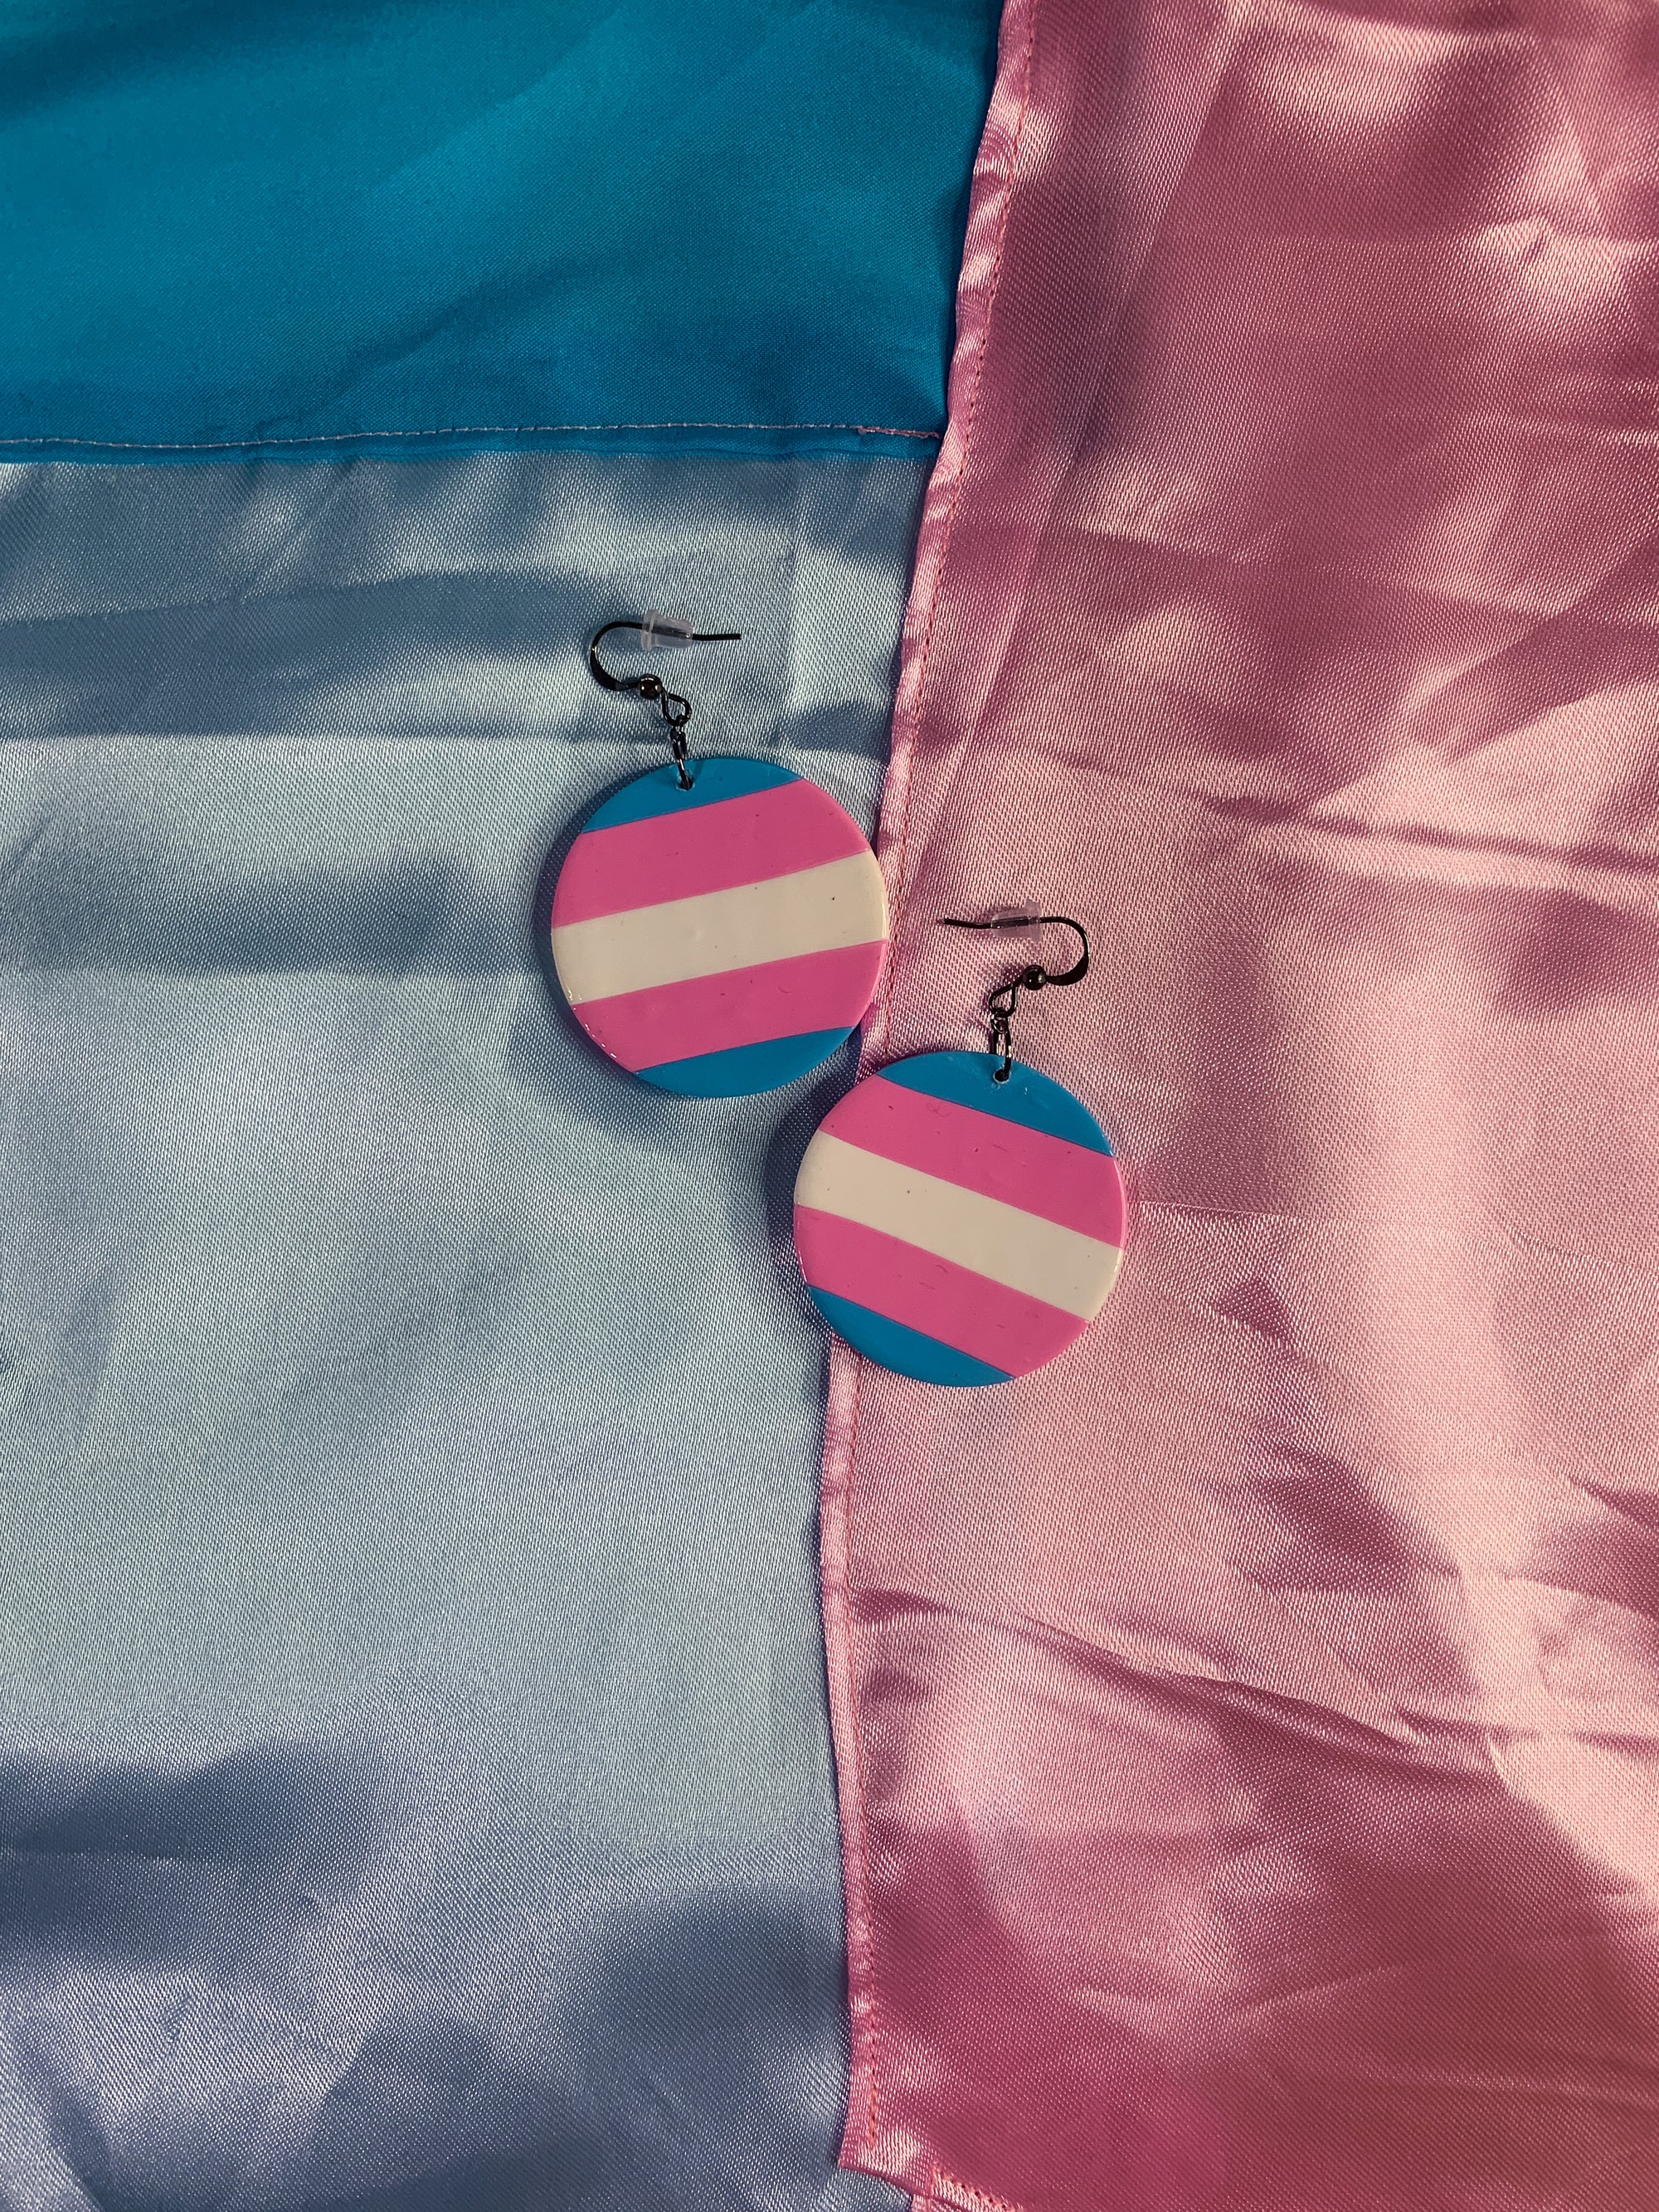 RIOtaso Rainbow Anting - Transgender